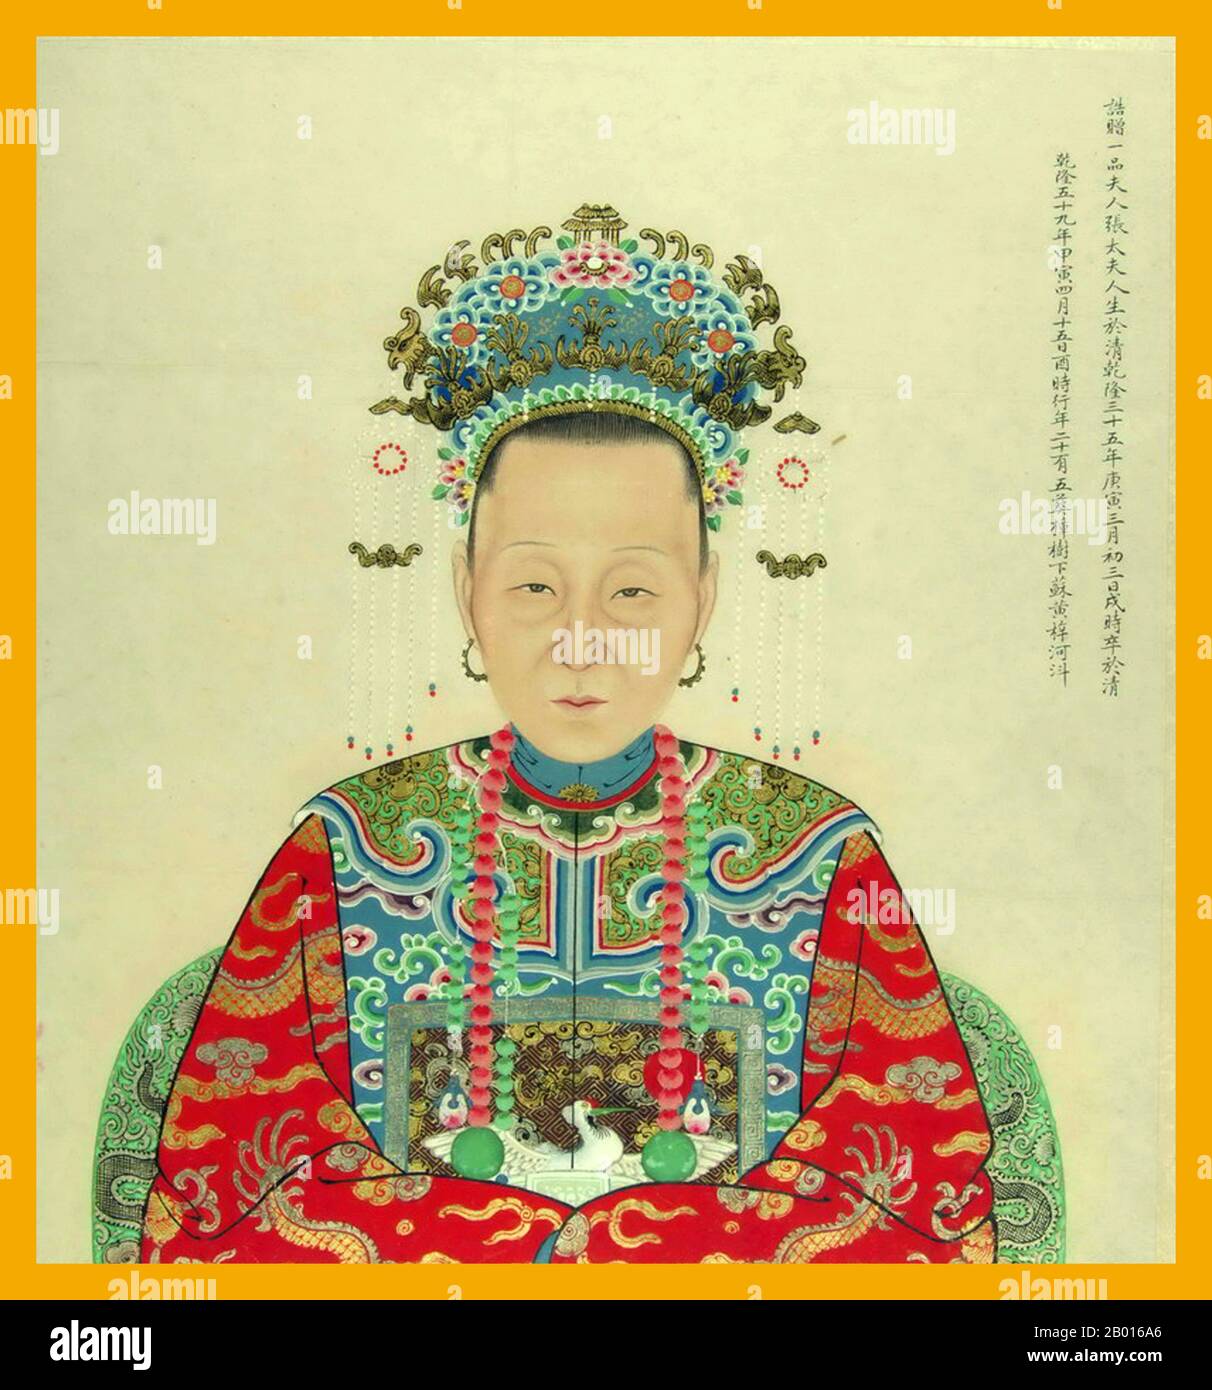 Cina: Ritratto di una dinastia Ming (1368-1644) consorte imperiale. Ritratto di una dinastia Ming (1368-1644) consorte imperiale vestita in abiti imperiali hanfu con elaborata corona. Foto Stock